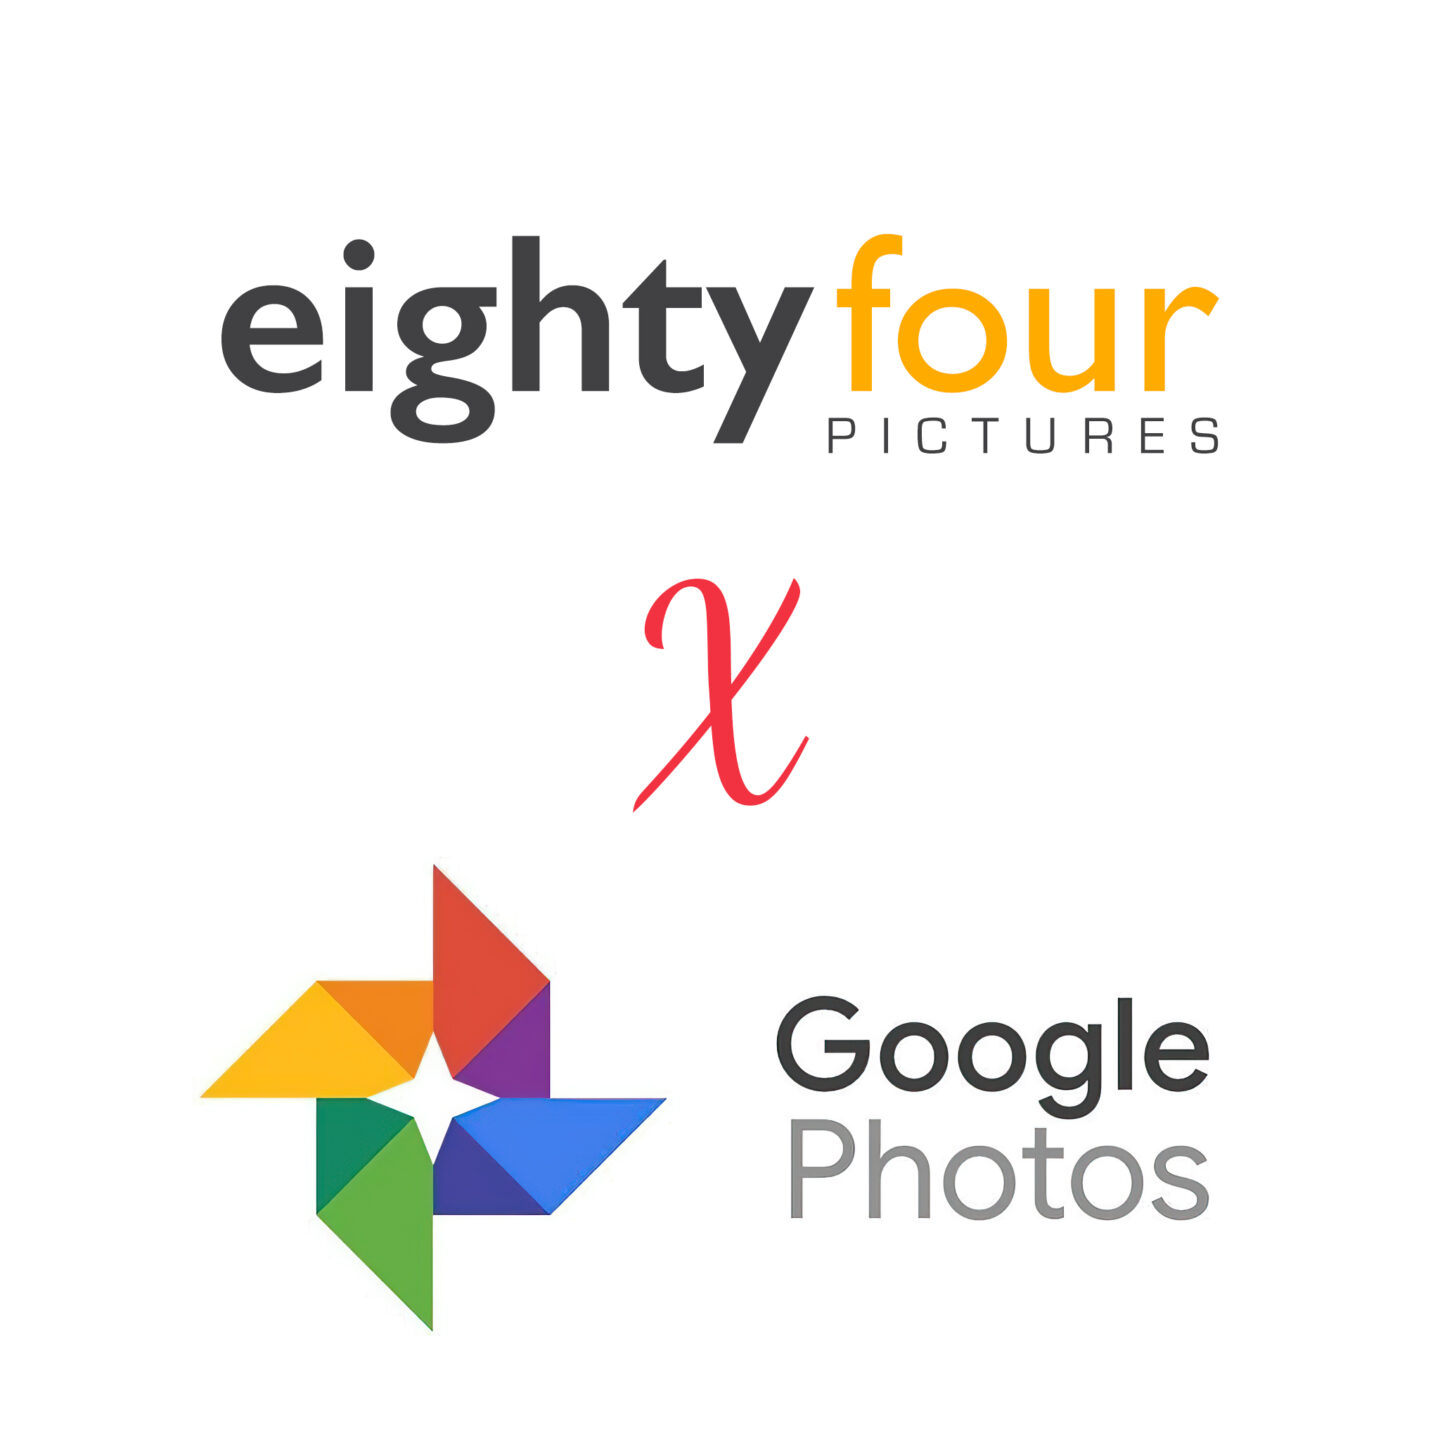 eightyfour Pictures x Google Photos